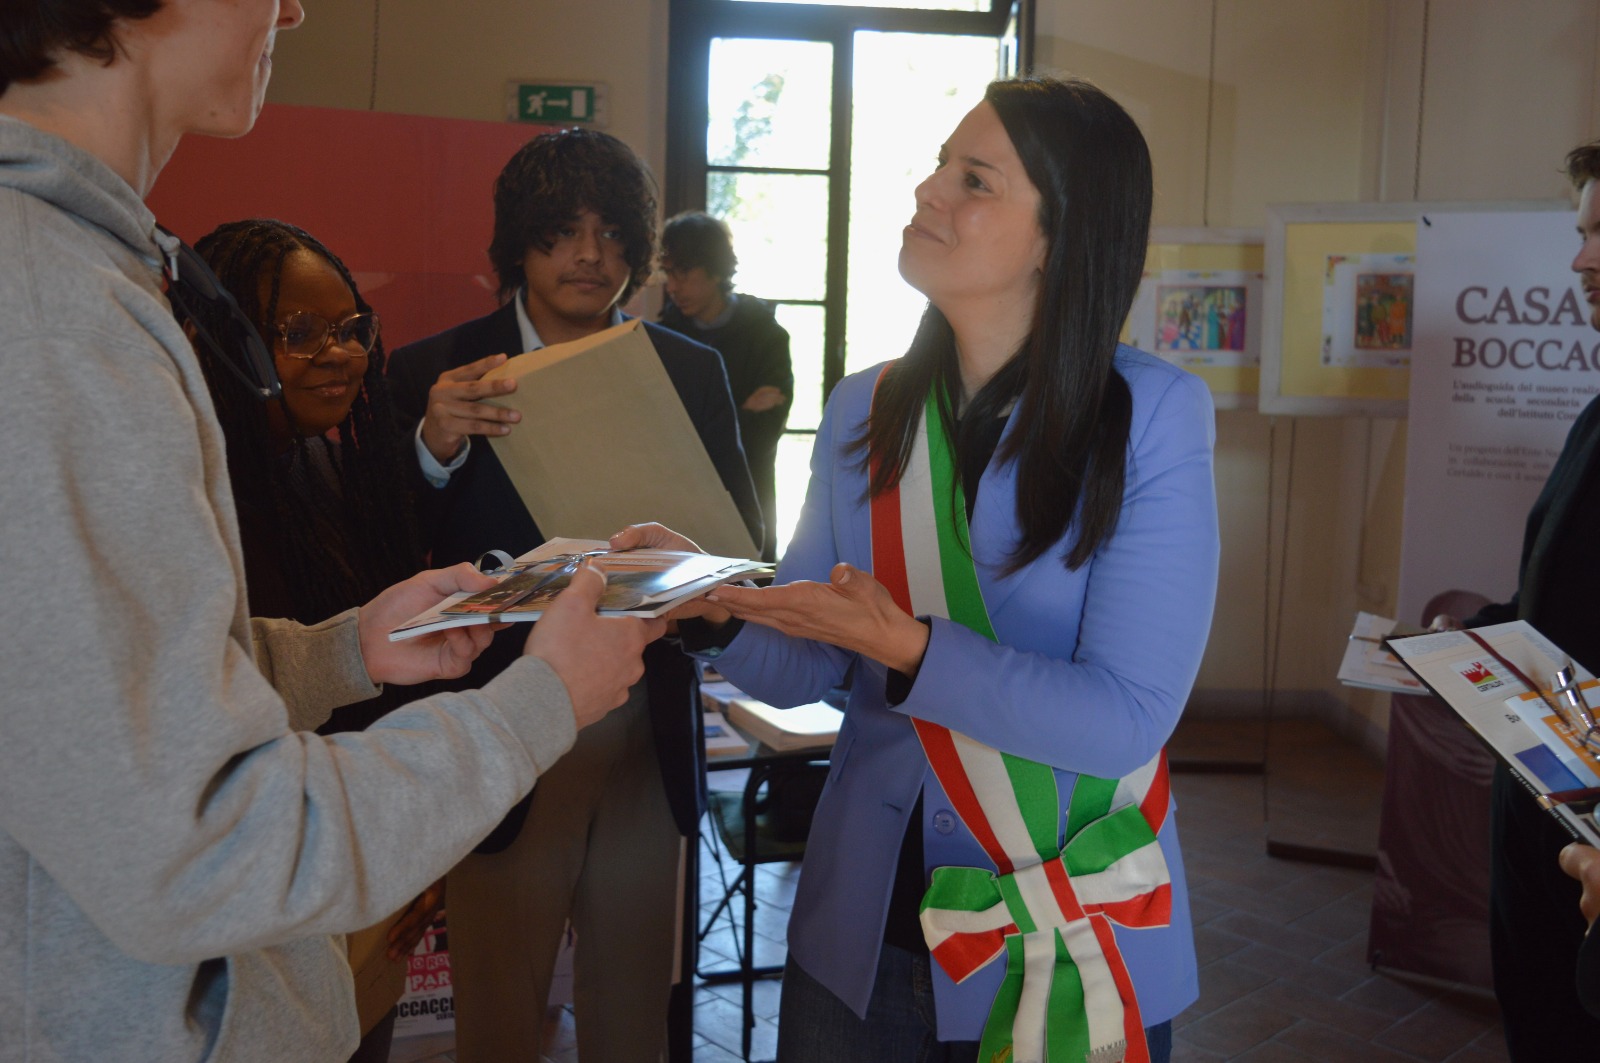 L'assessore Clara Conforti dona a ciascun studente un omaggio di benvenuto (Fonte foto Comune di Certaldo)